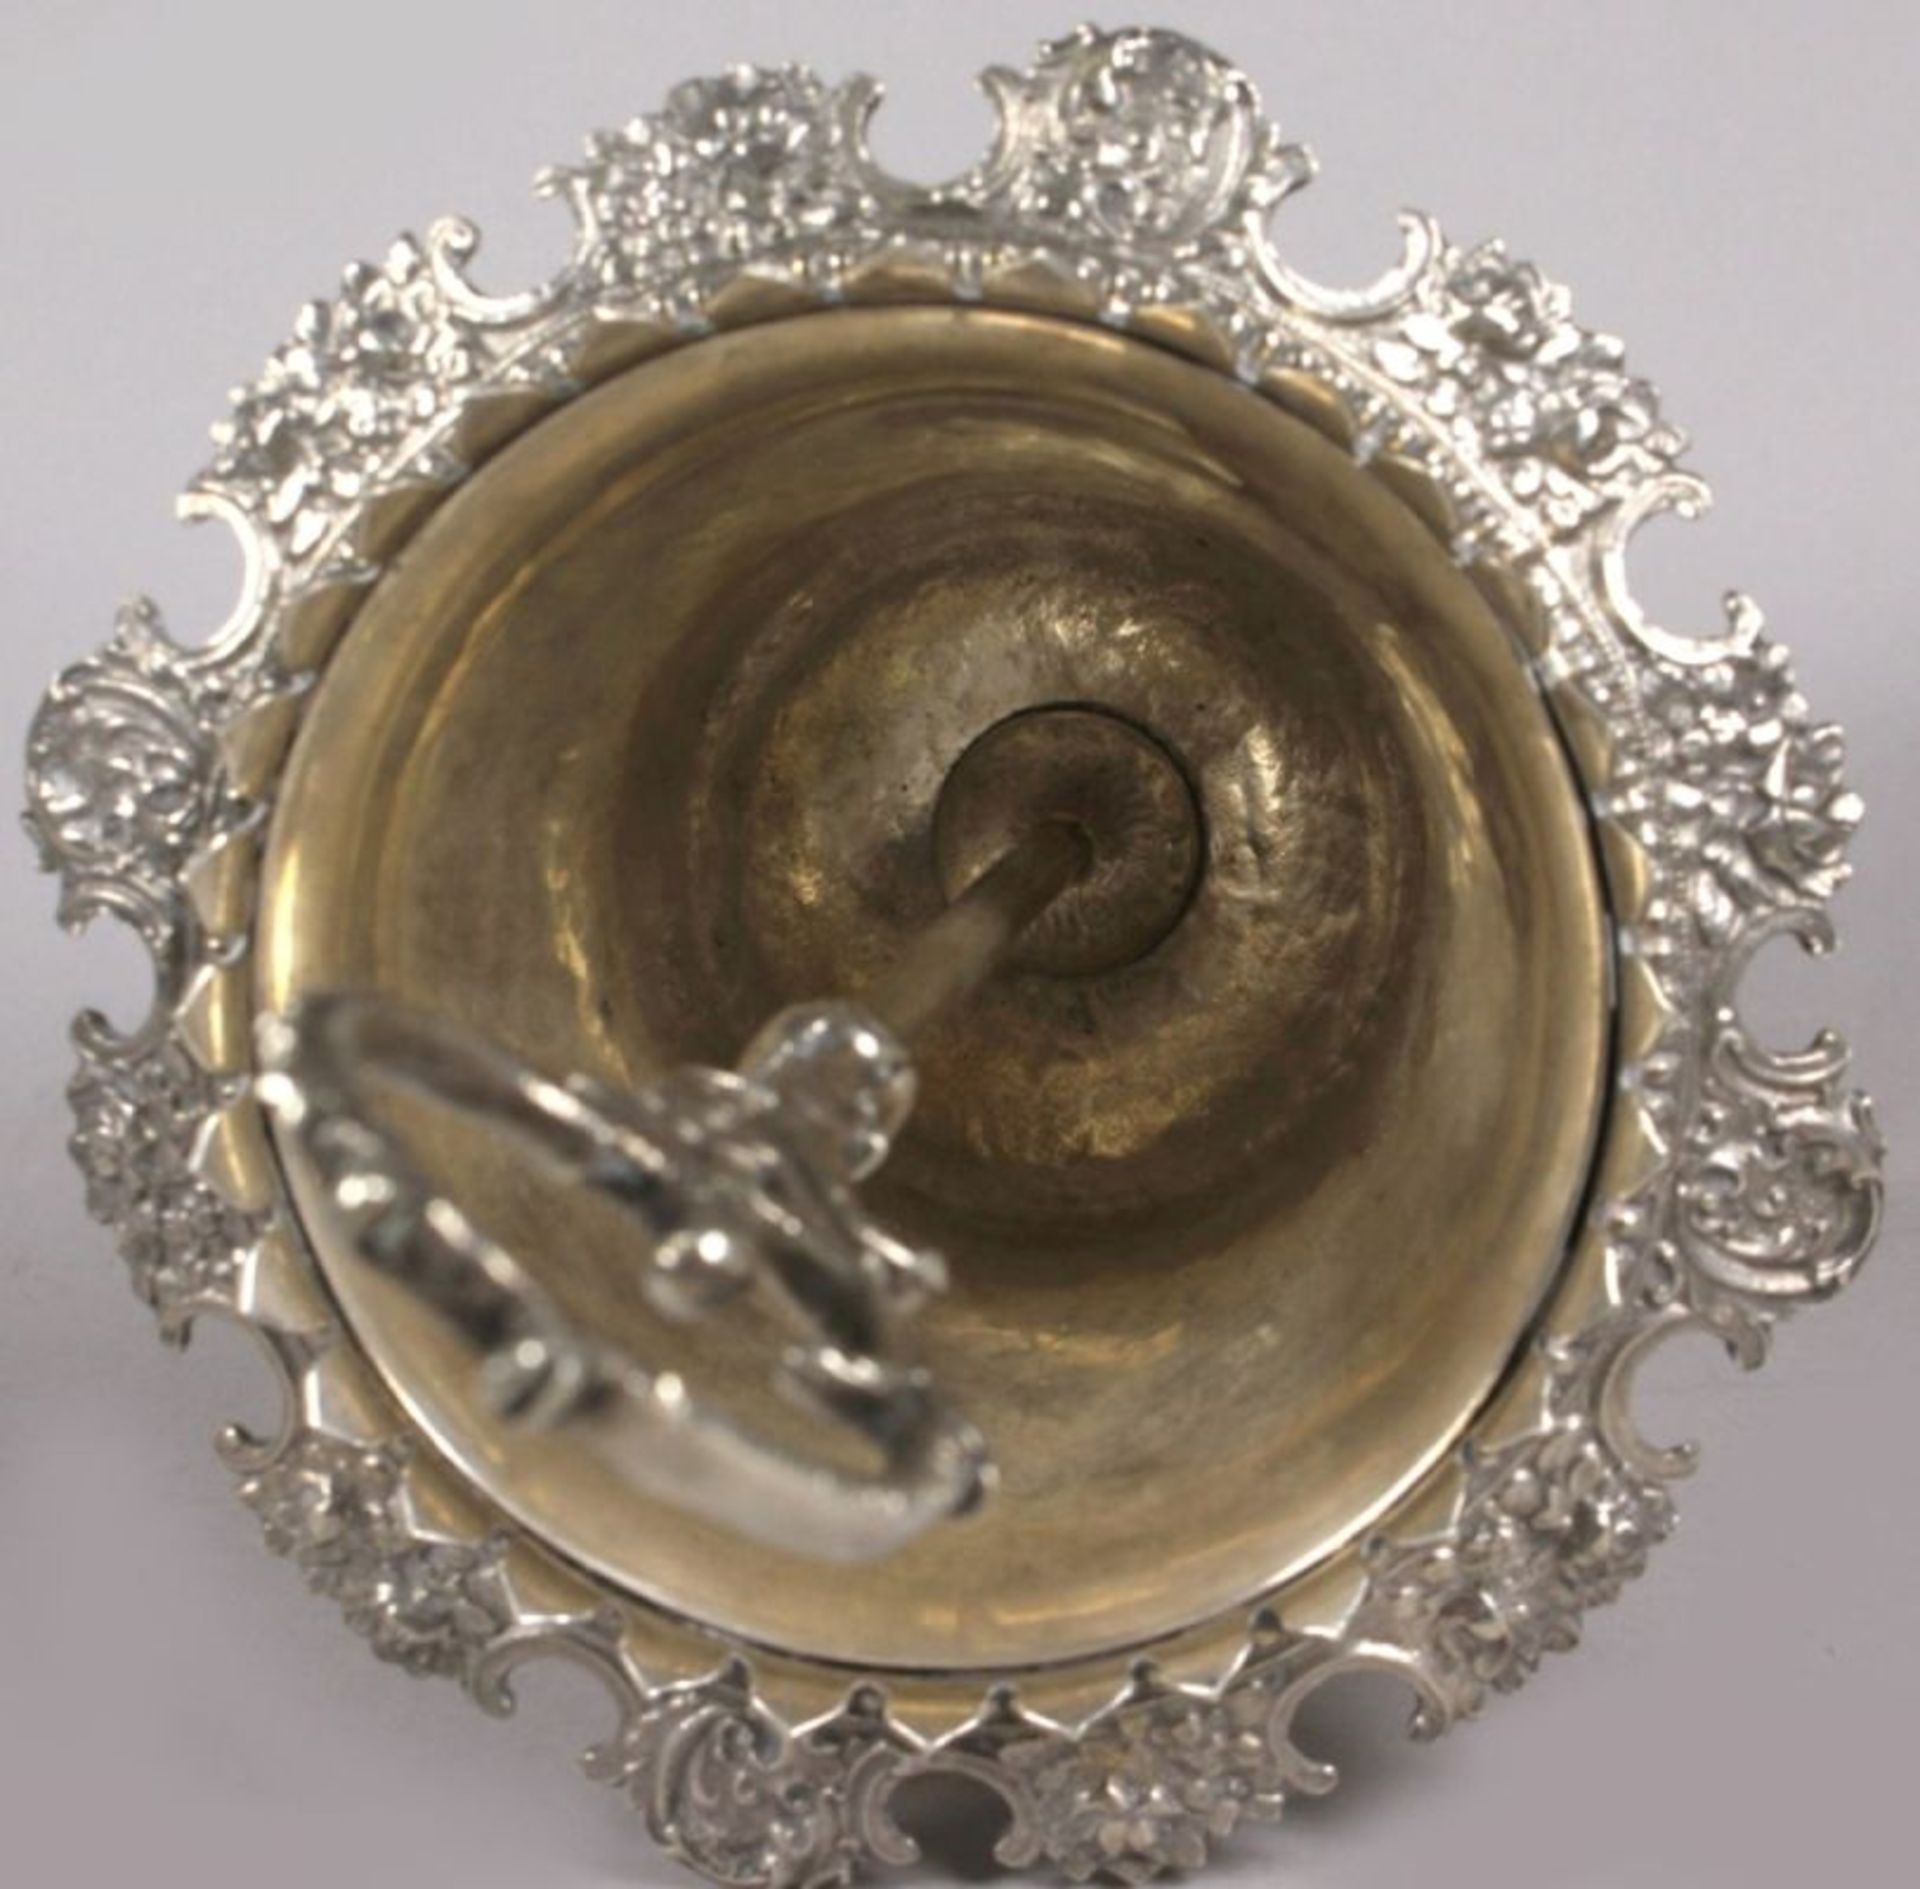 Zuckerschale, unleserlich gepunzt, Mitte 19. Jh., Silber, runder Stand mit geschweiften - Bild 2 aus 4